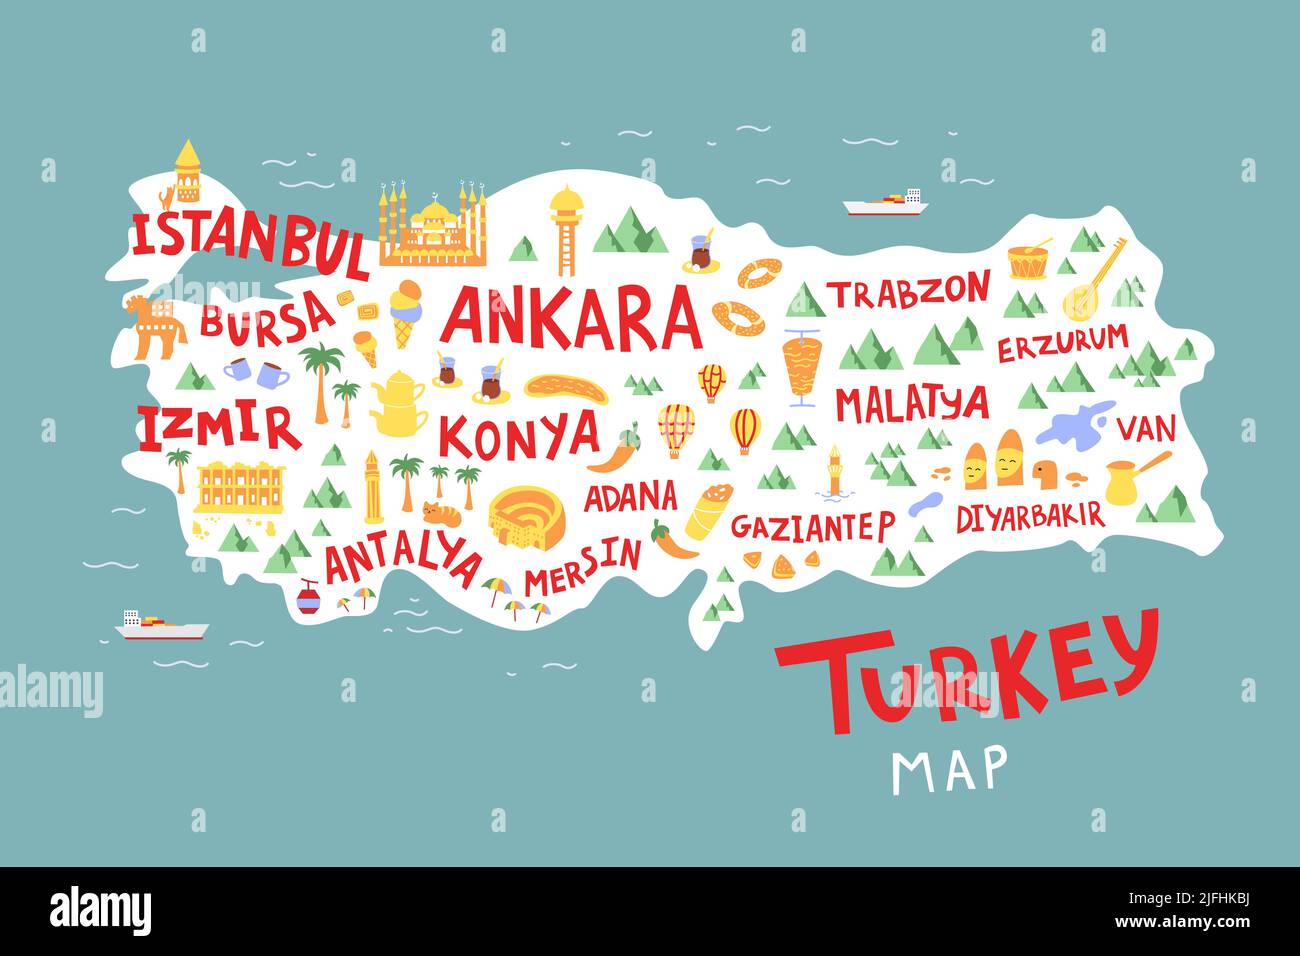 Türkei Cartoon Karte flach Hand gezeichnet Vektor-Illustration. Stadtnamen, Schriftzüge und Wahrzeichen, Cliparts für Touristenattraktionen. Reise, Comic-Poster, b Stock Vektor